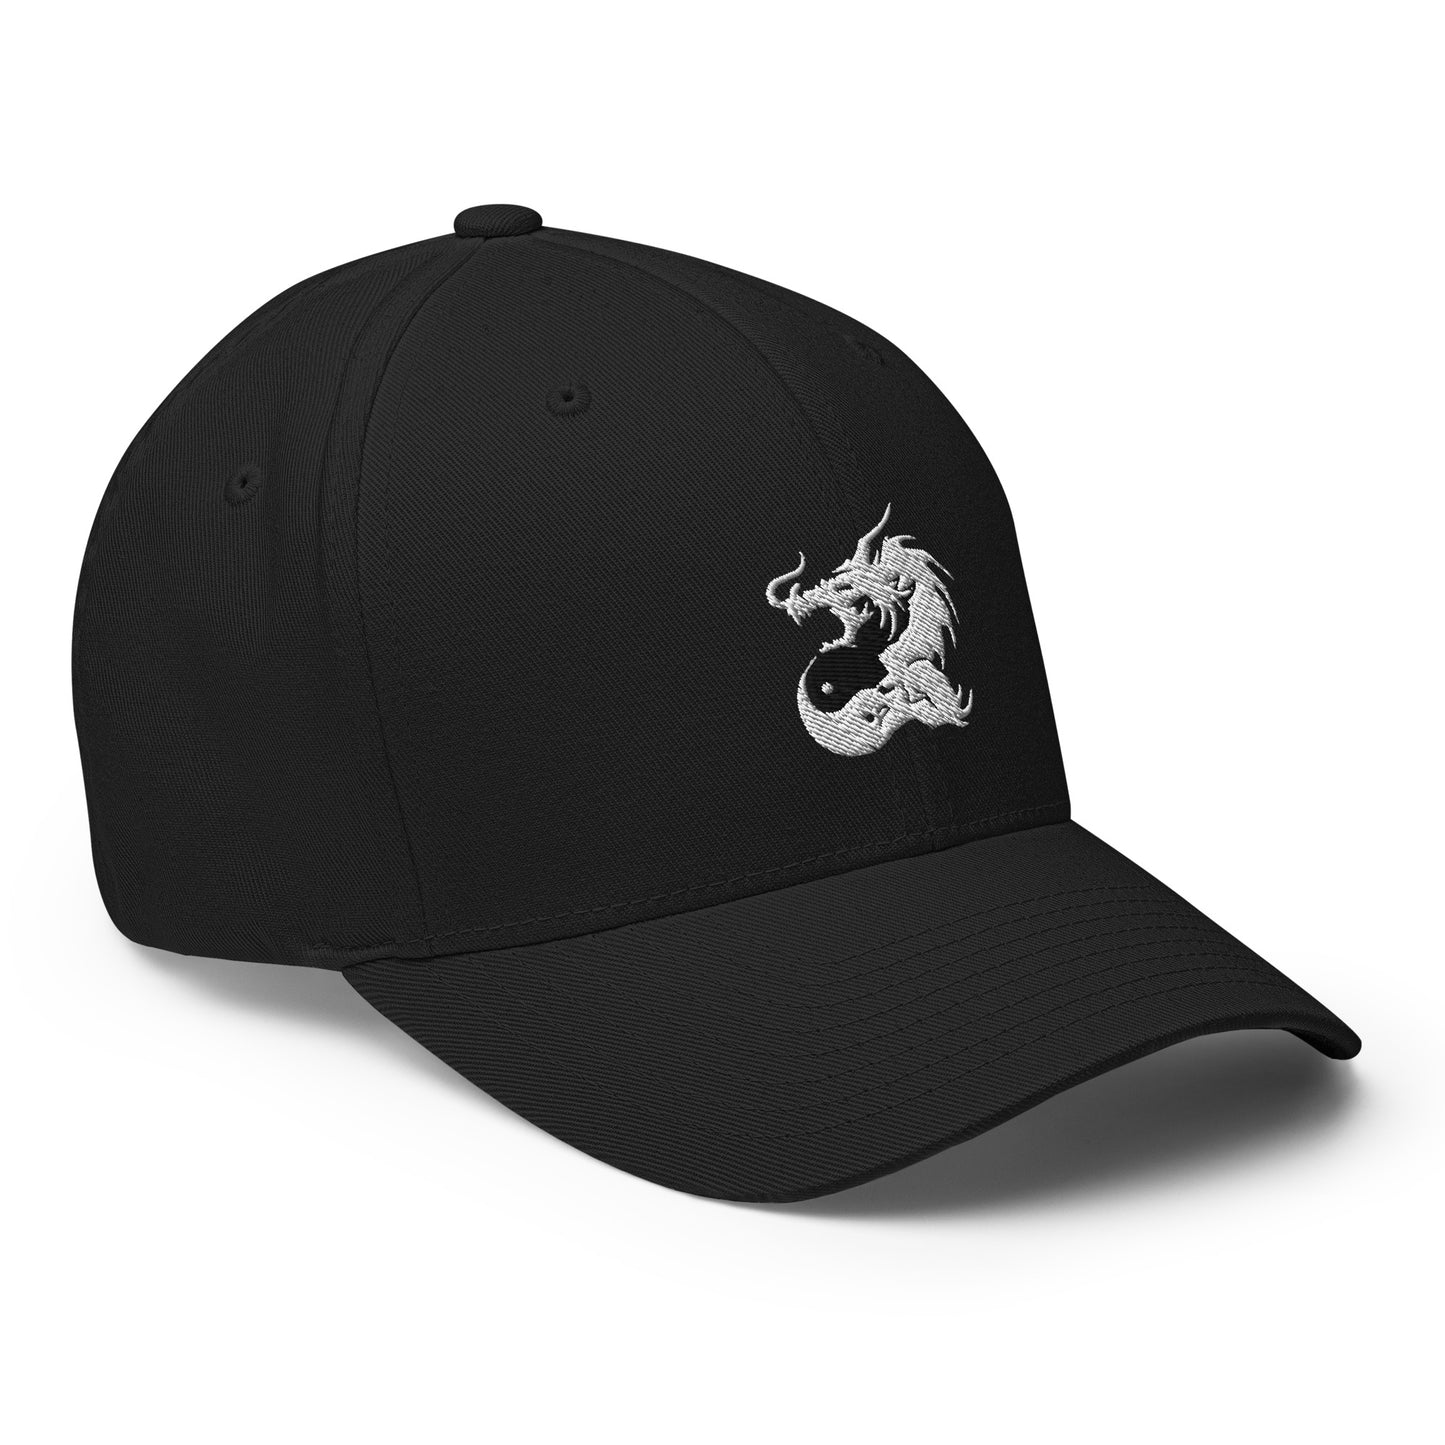 Baseball Cap with Ying&Yang Dragon Symbol